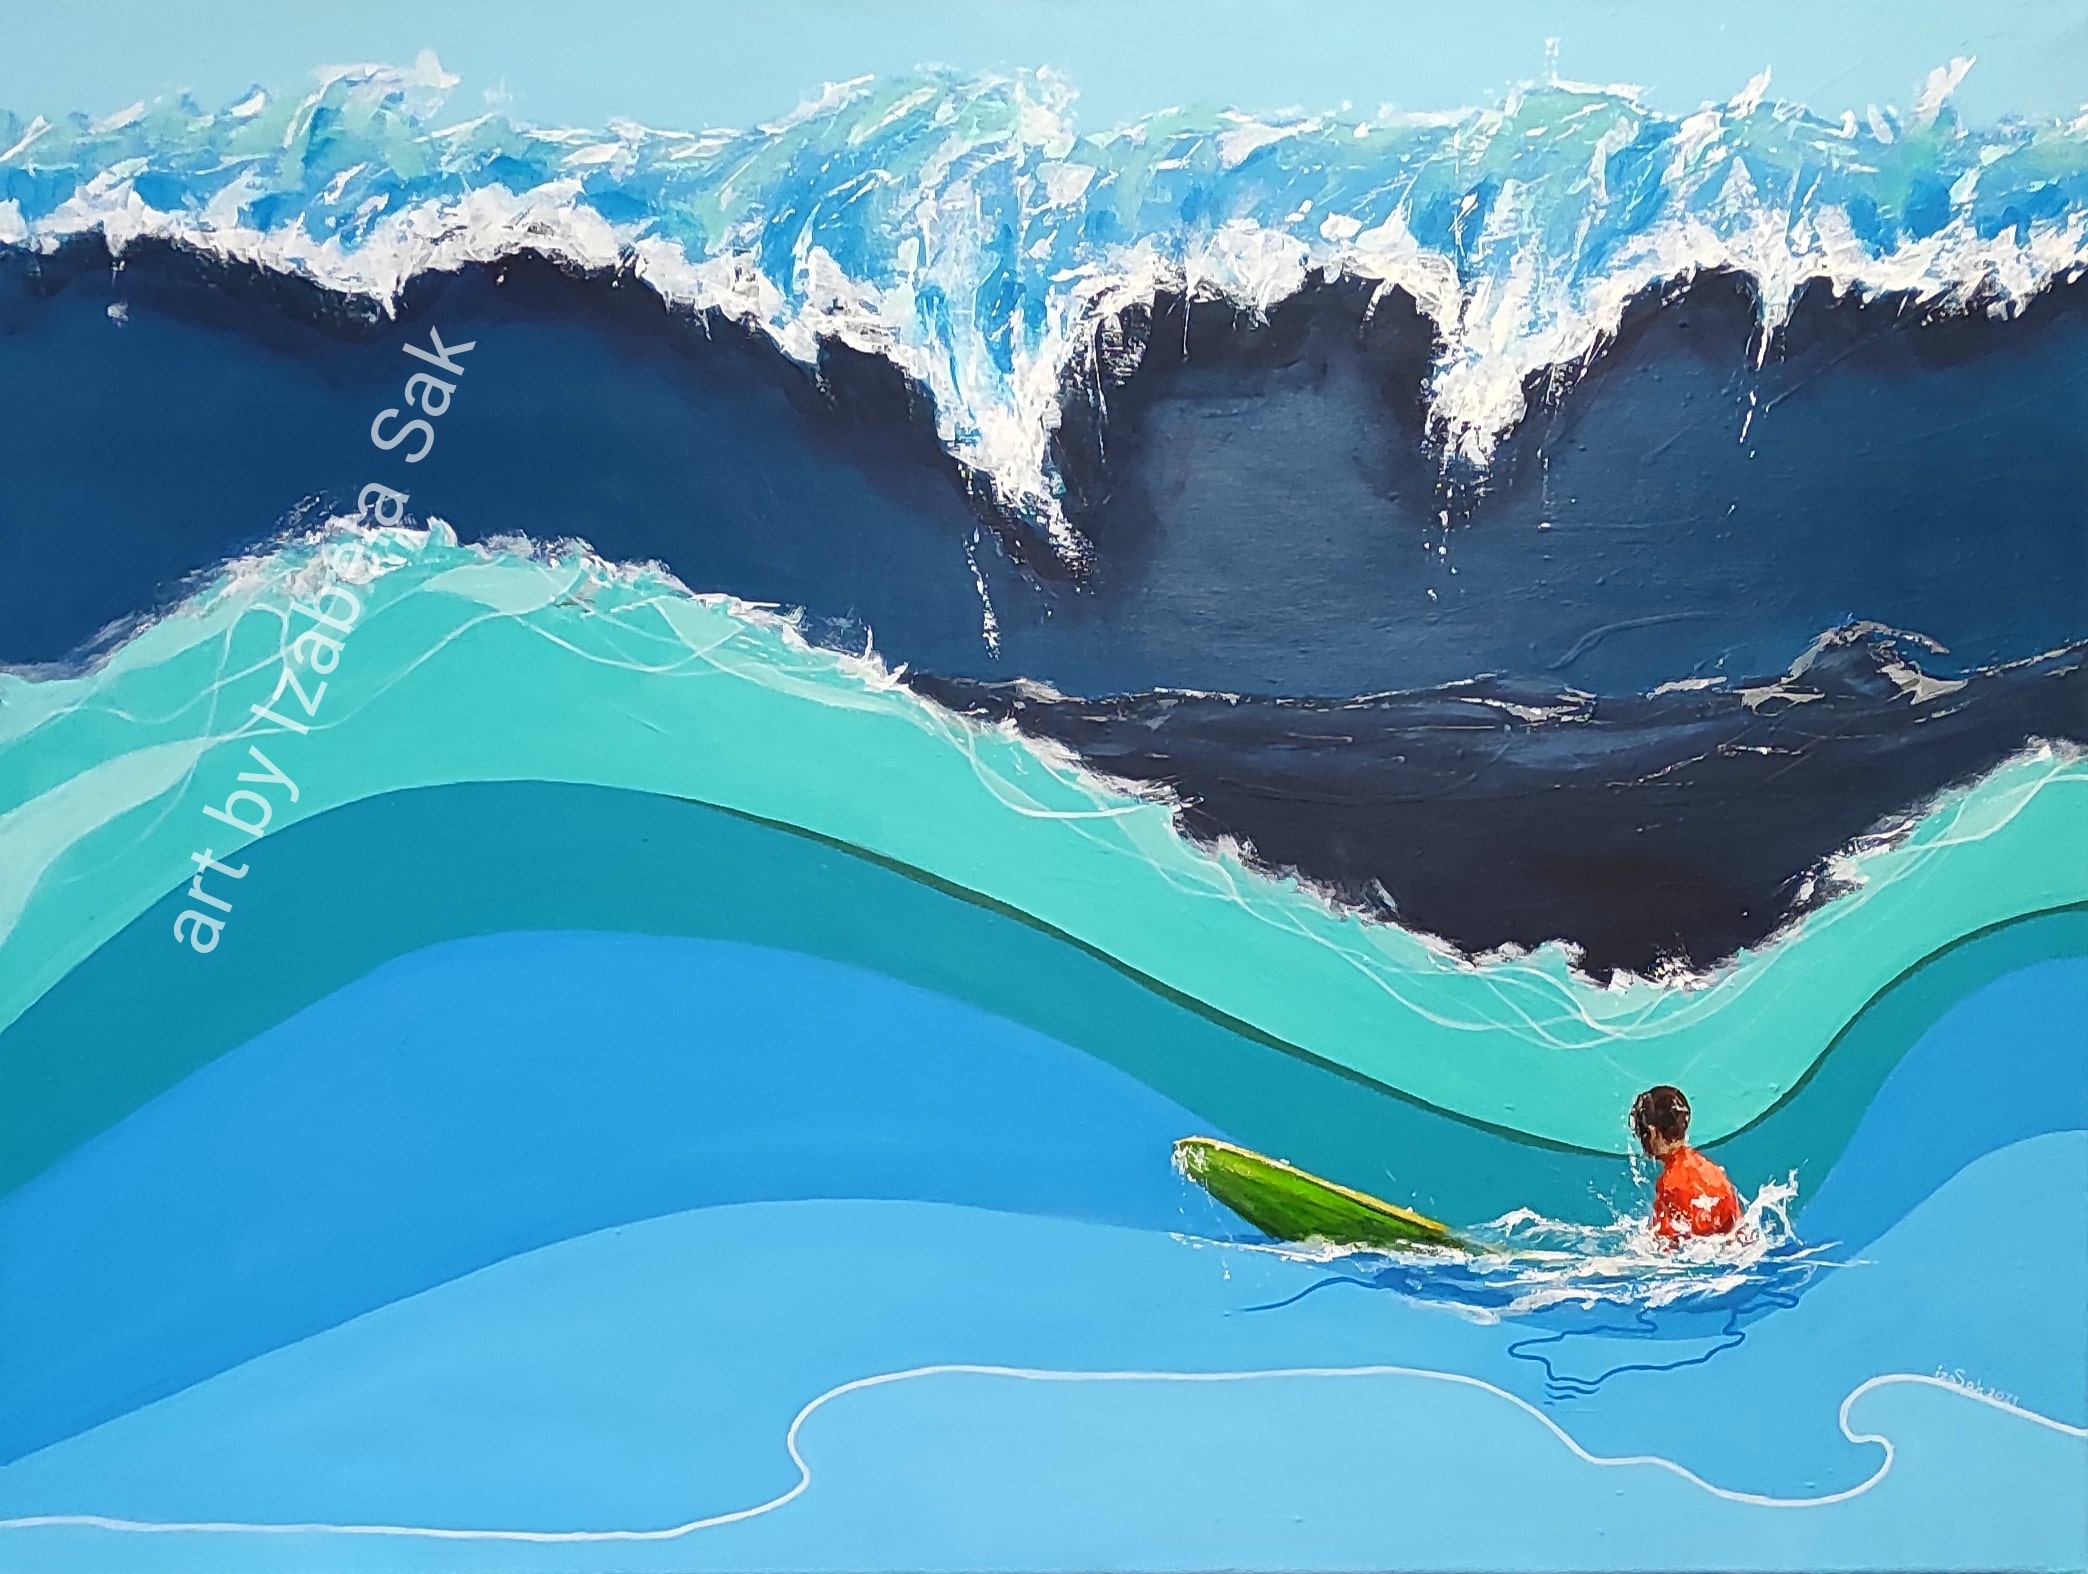 Obraz akrylowy na płótnie. Izabela Sak. Tytuł: Góra surfera. Rok 2021. 90cm x 120cm.